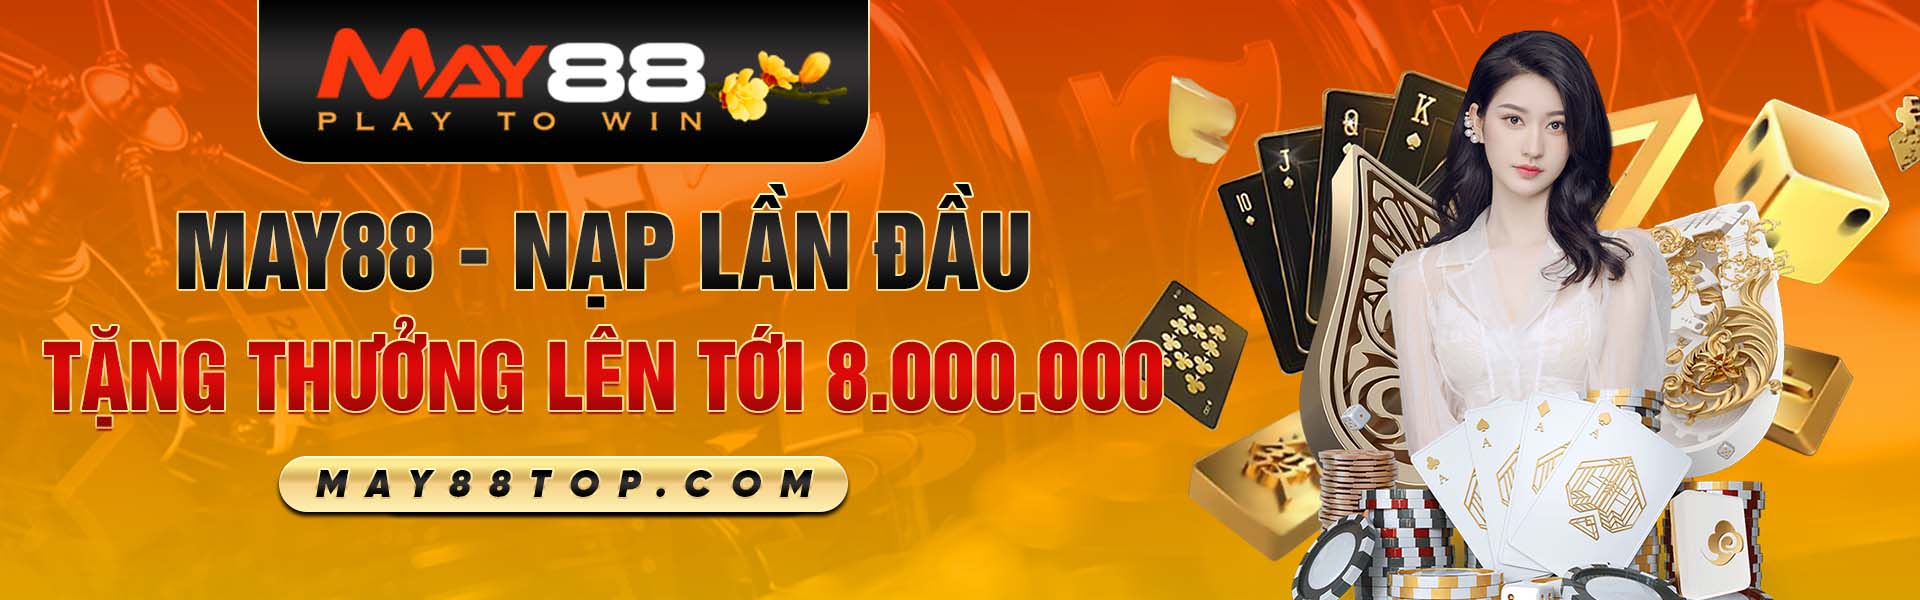 may88-nap-lan-dau-tang-thuong-len-toi-8-000-000